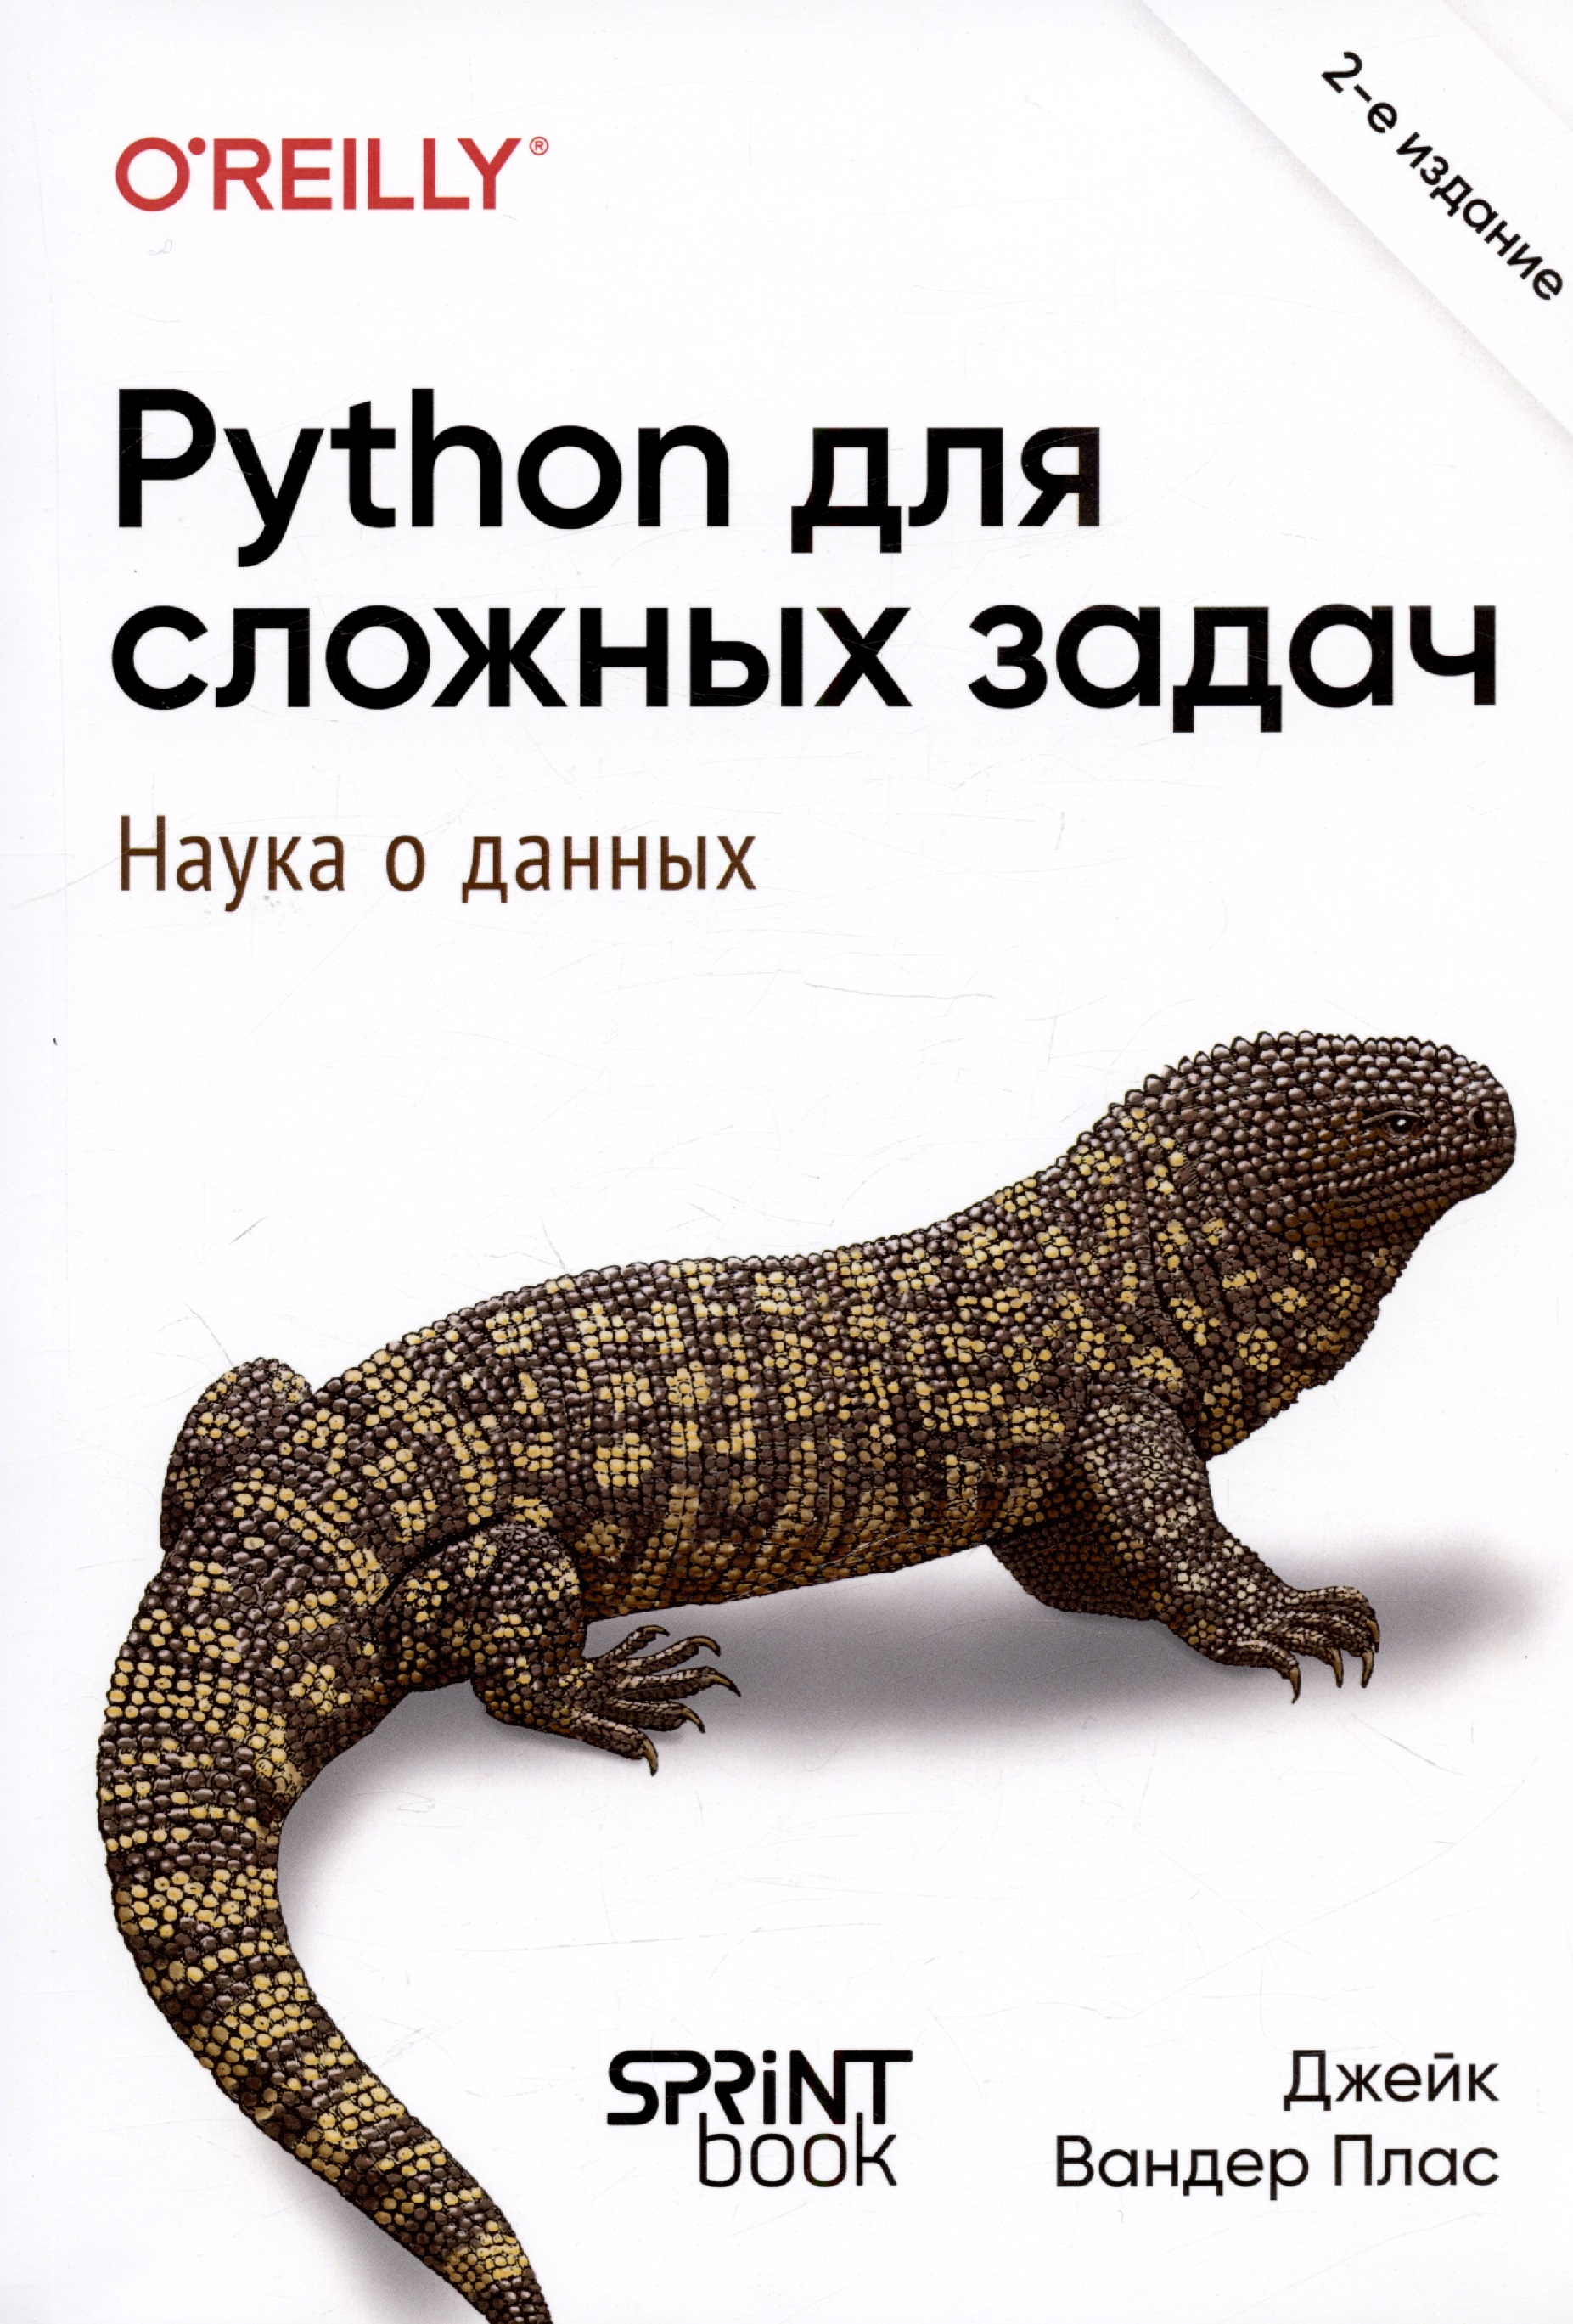 Python для сложных задач: наука о данных. 2-е издание плас дж вандер python для сложных задач наука о данных и машинное обучение